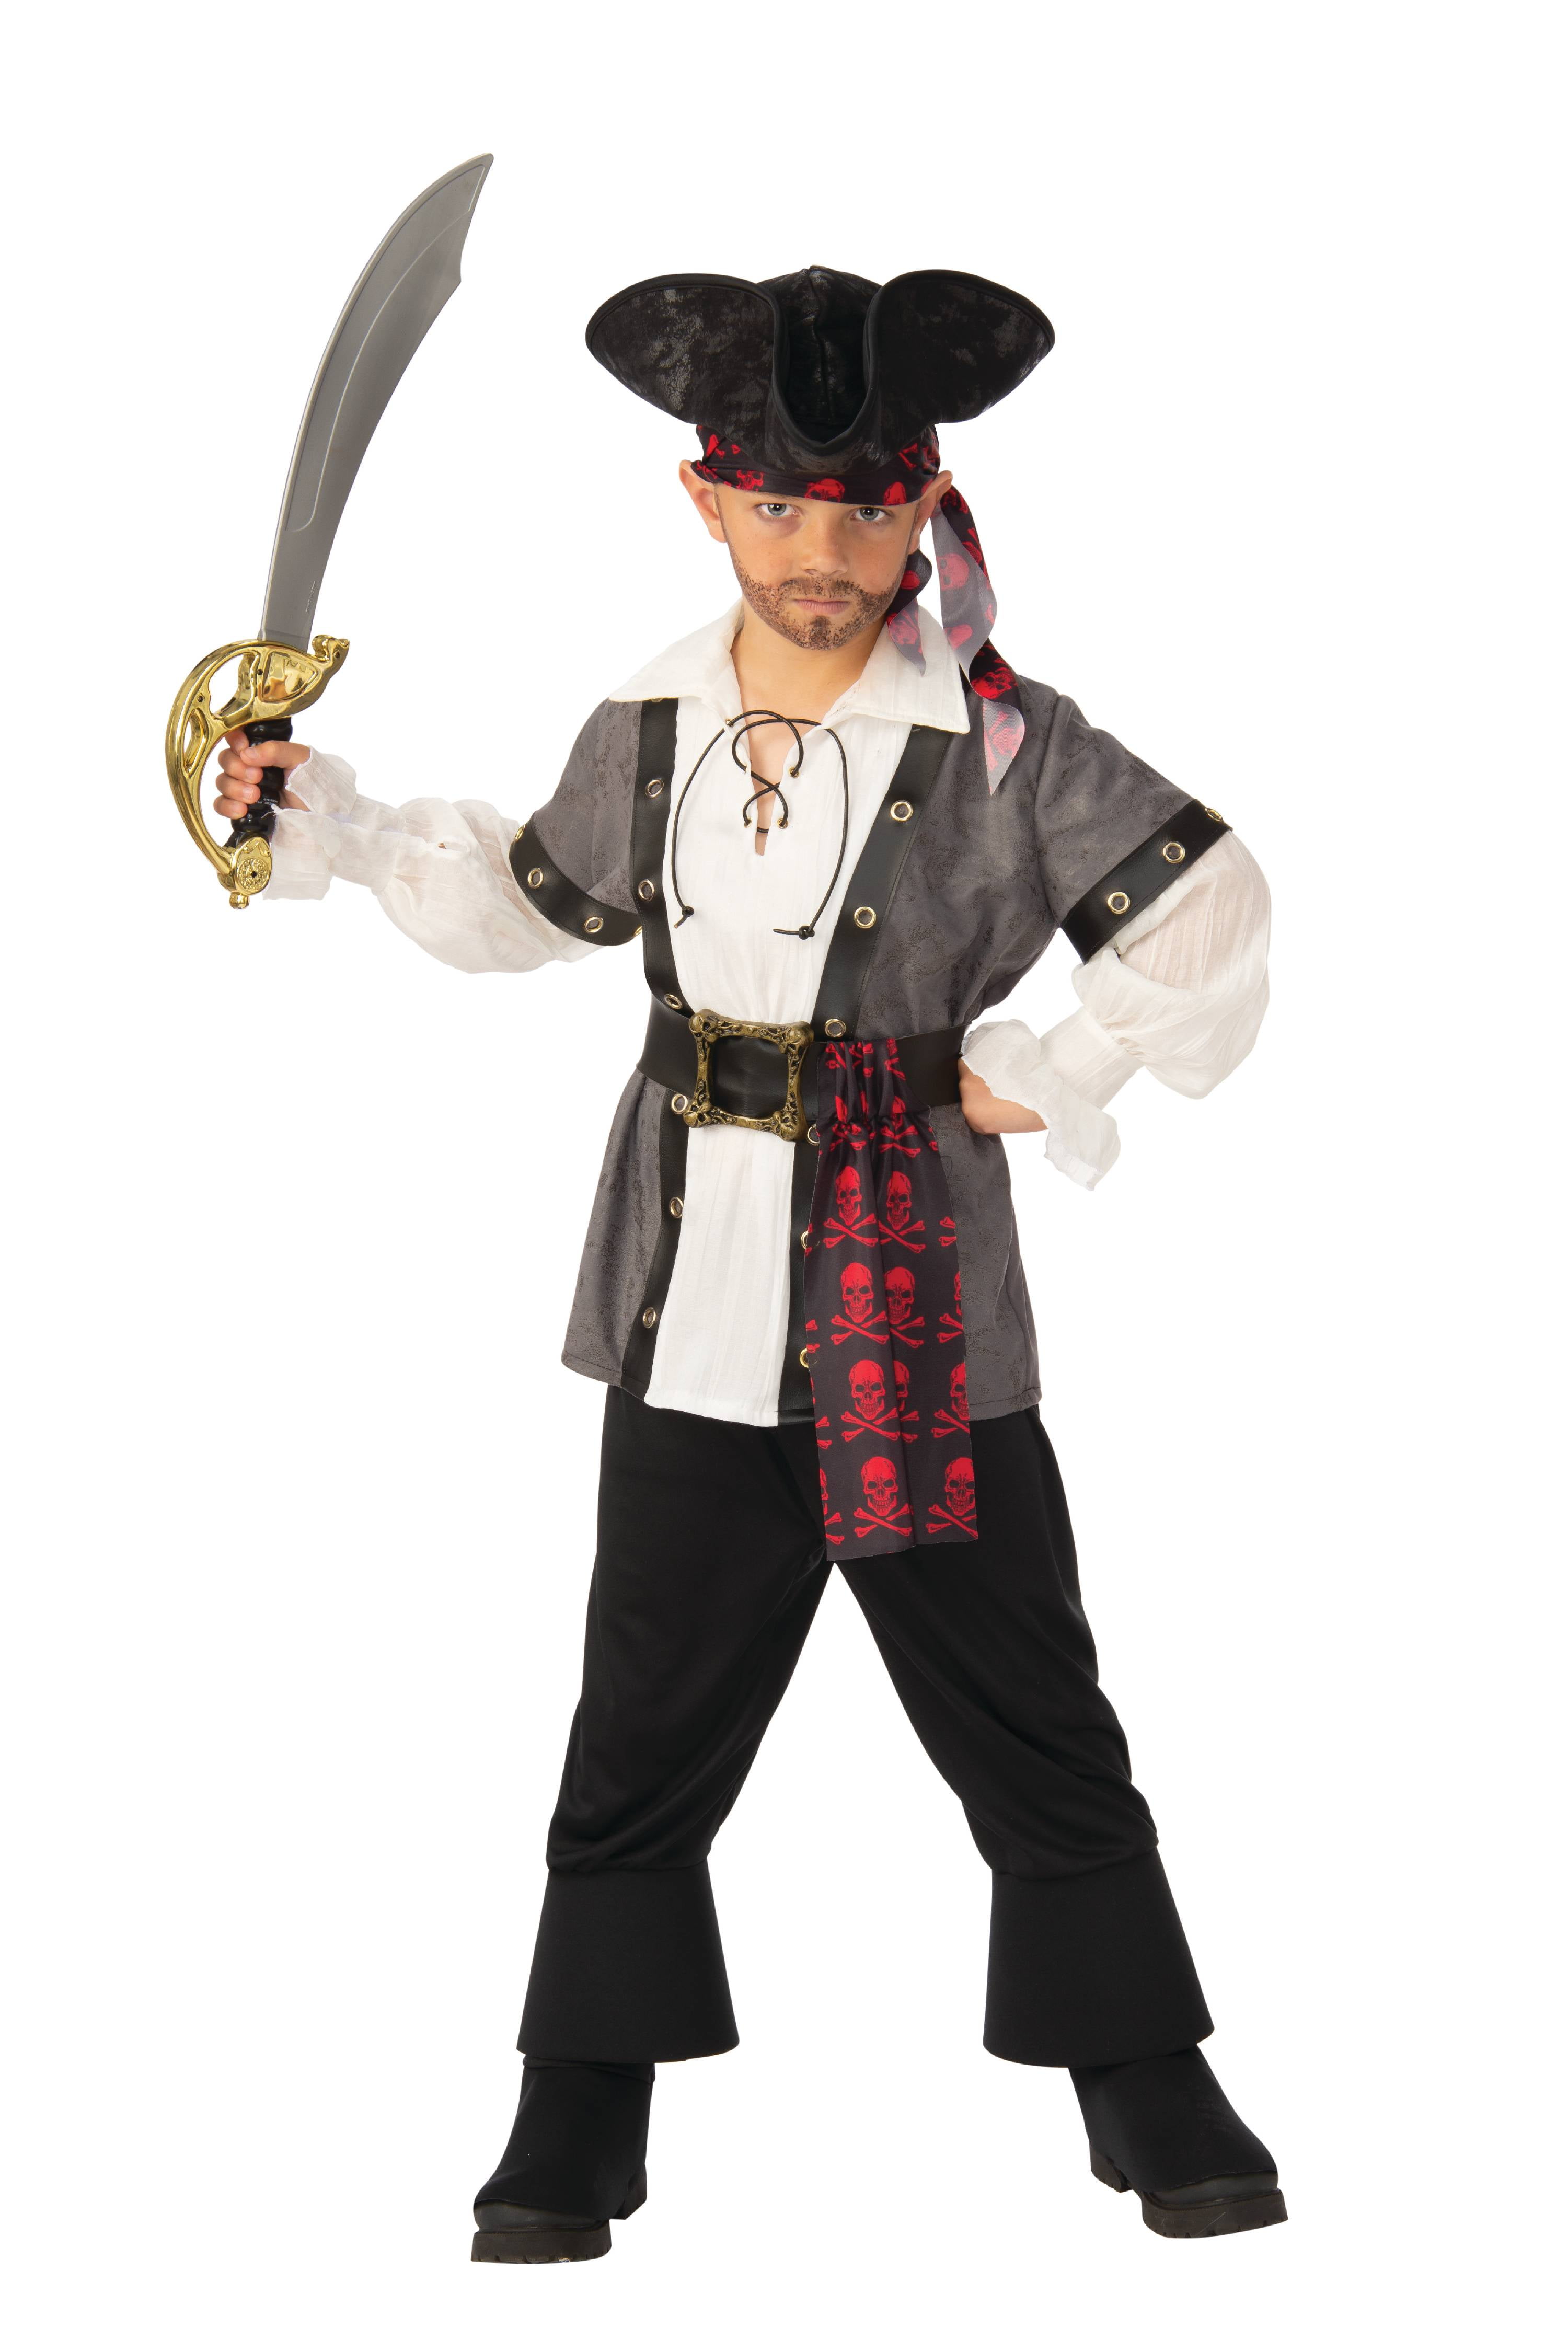 Millimeter Aanhankelijk melodie Boys Pirate Halloween Costume S, Black - Walmart.com